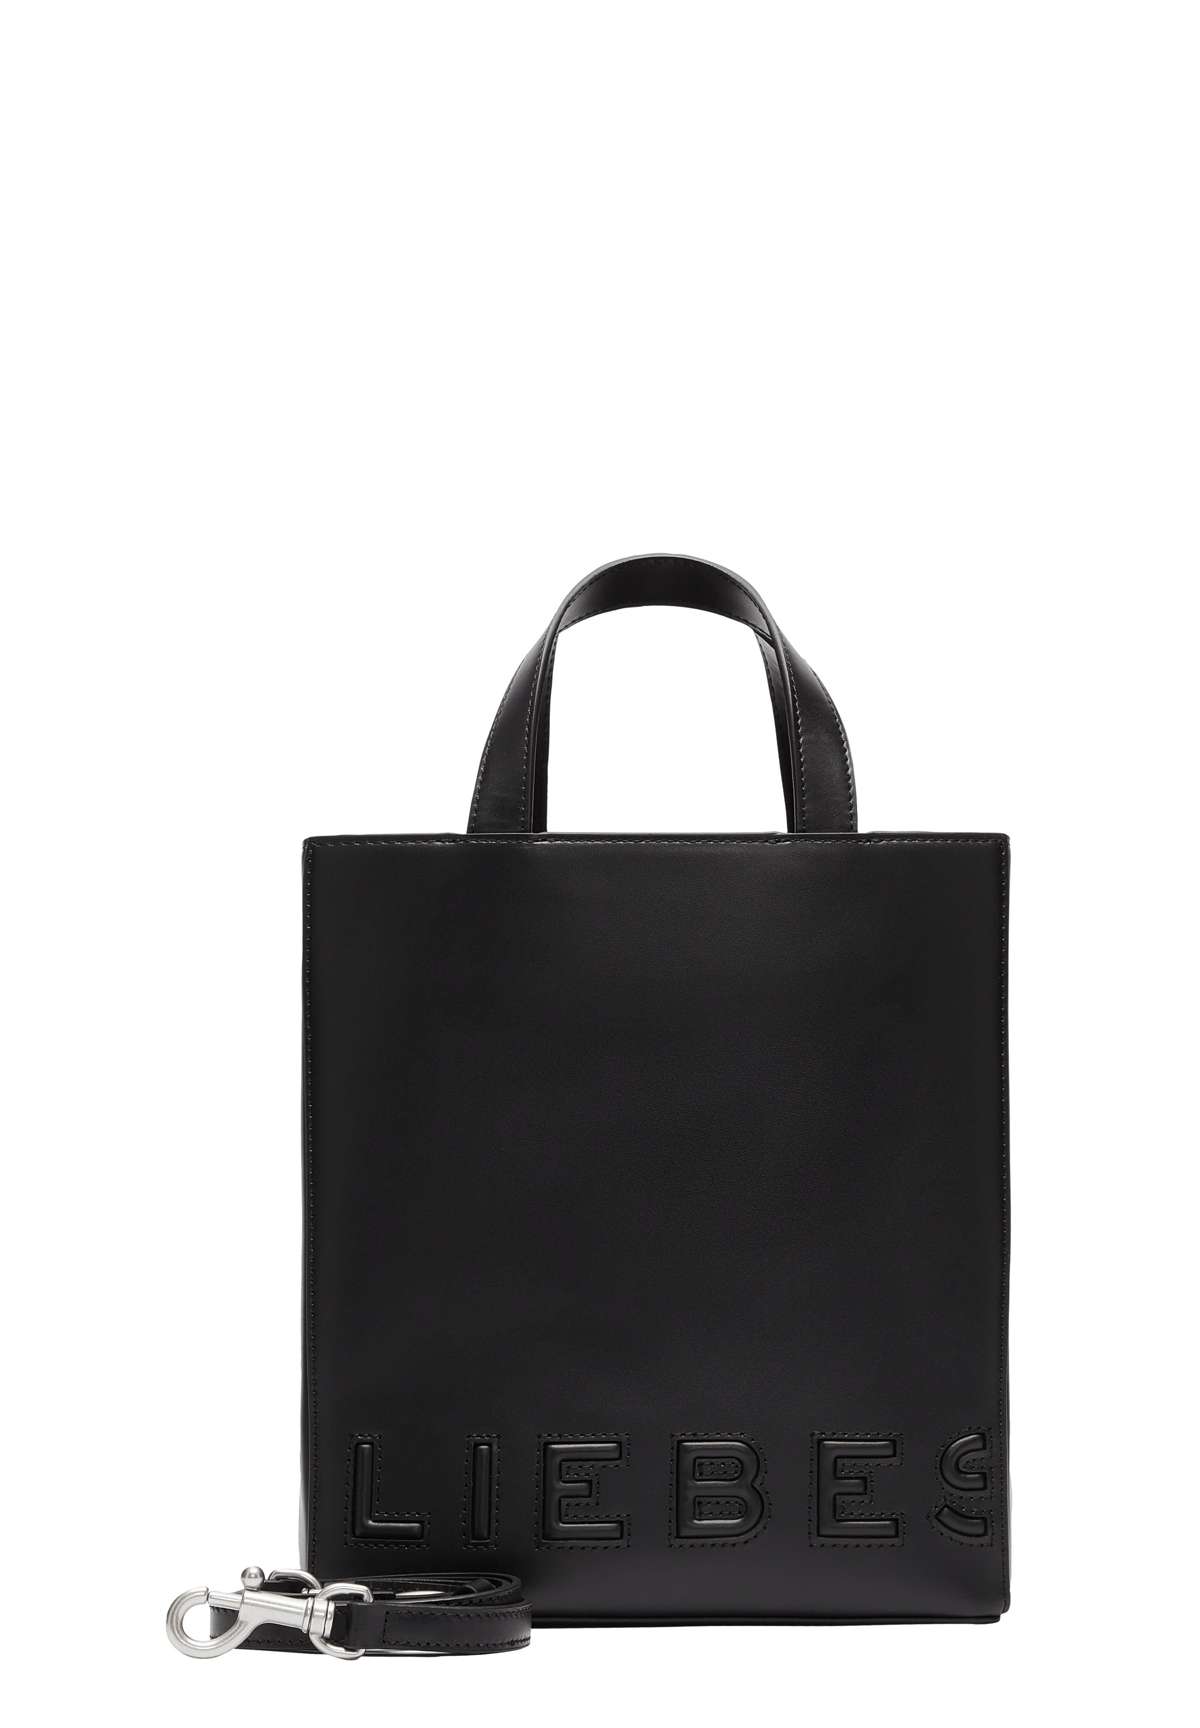 PAPER S KLEINE - Shopping Bag PAPER S KLEINE